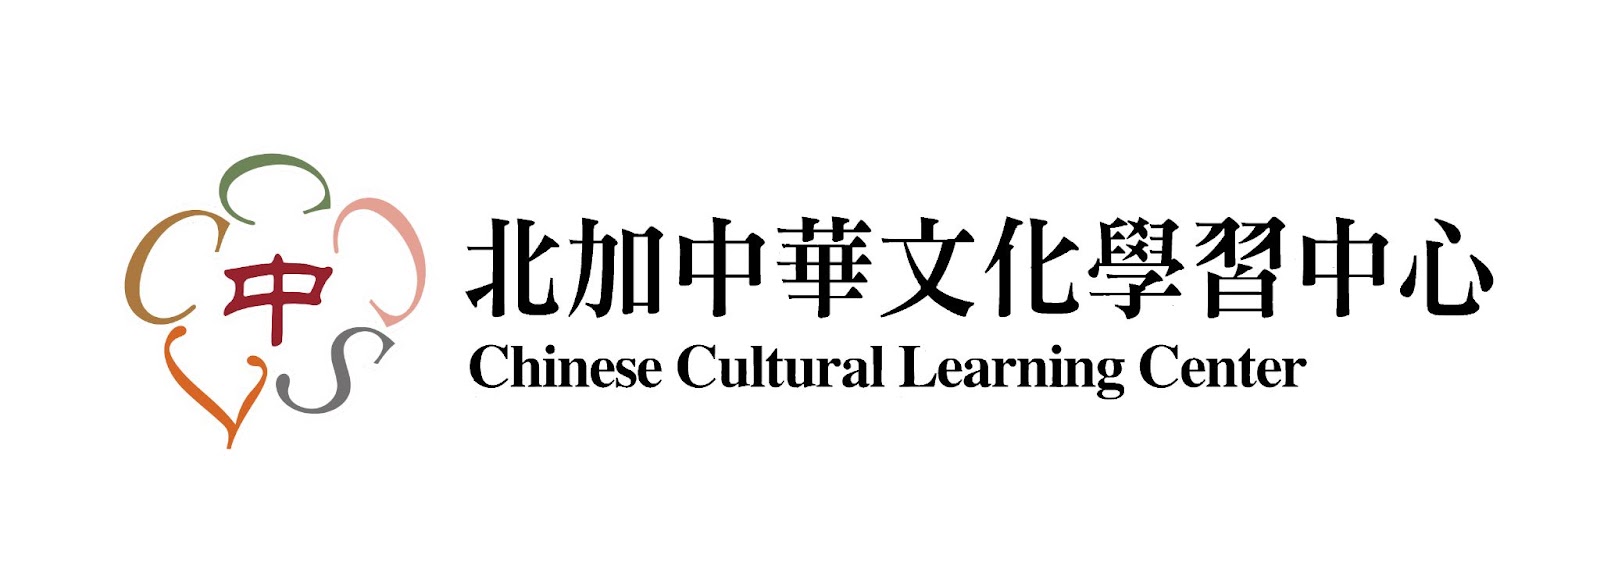 北加中華文化學習中心Banner